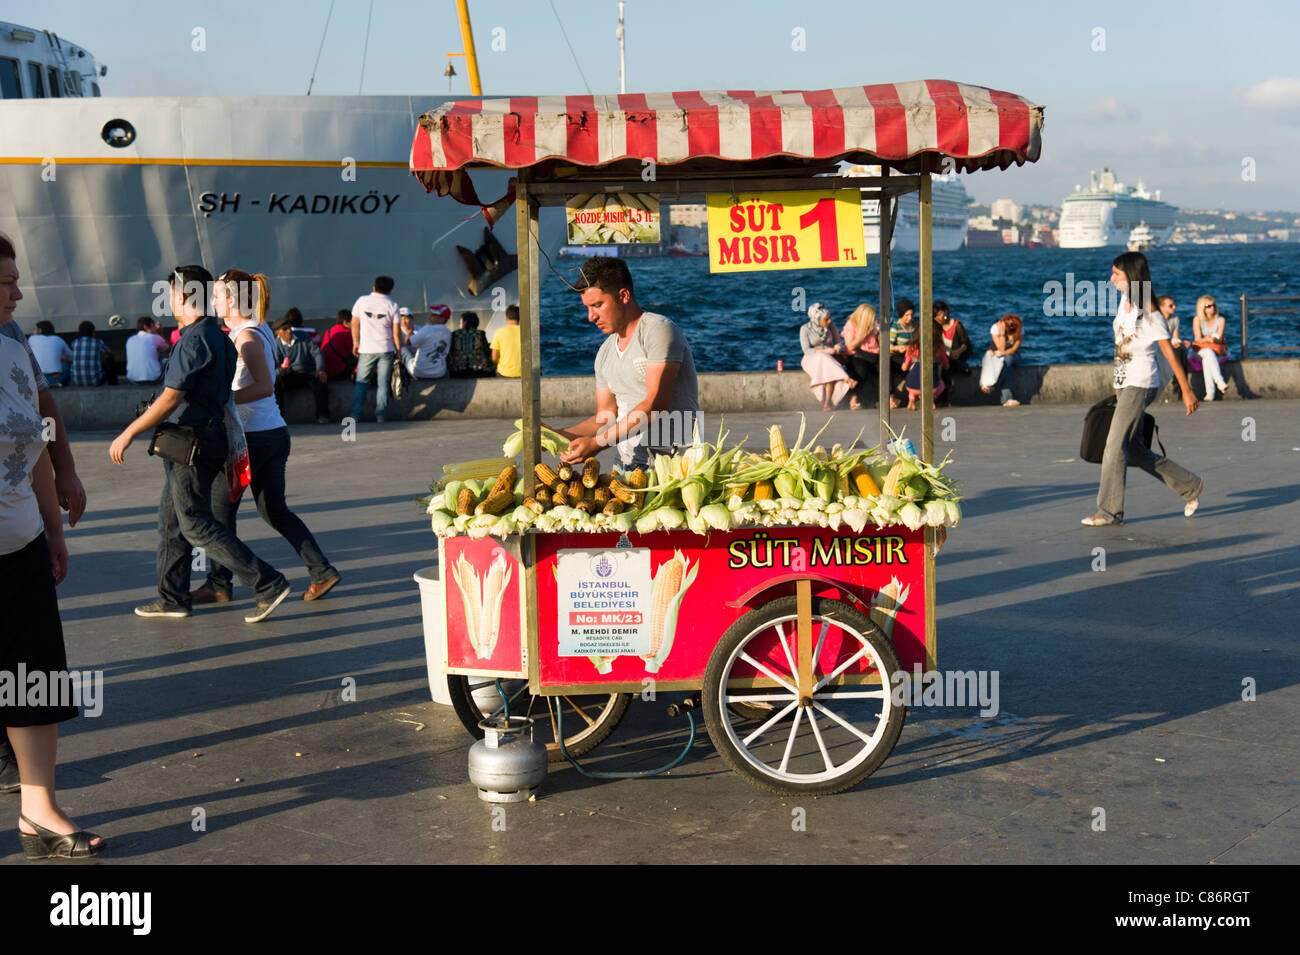 Sulla pannocchia di mais venditore ambulante sul lungomare nel quartiere Eminonu, Istanbul, Turchia Foto Stock